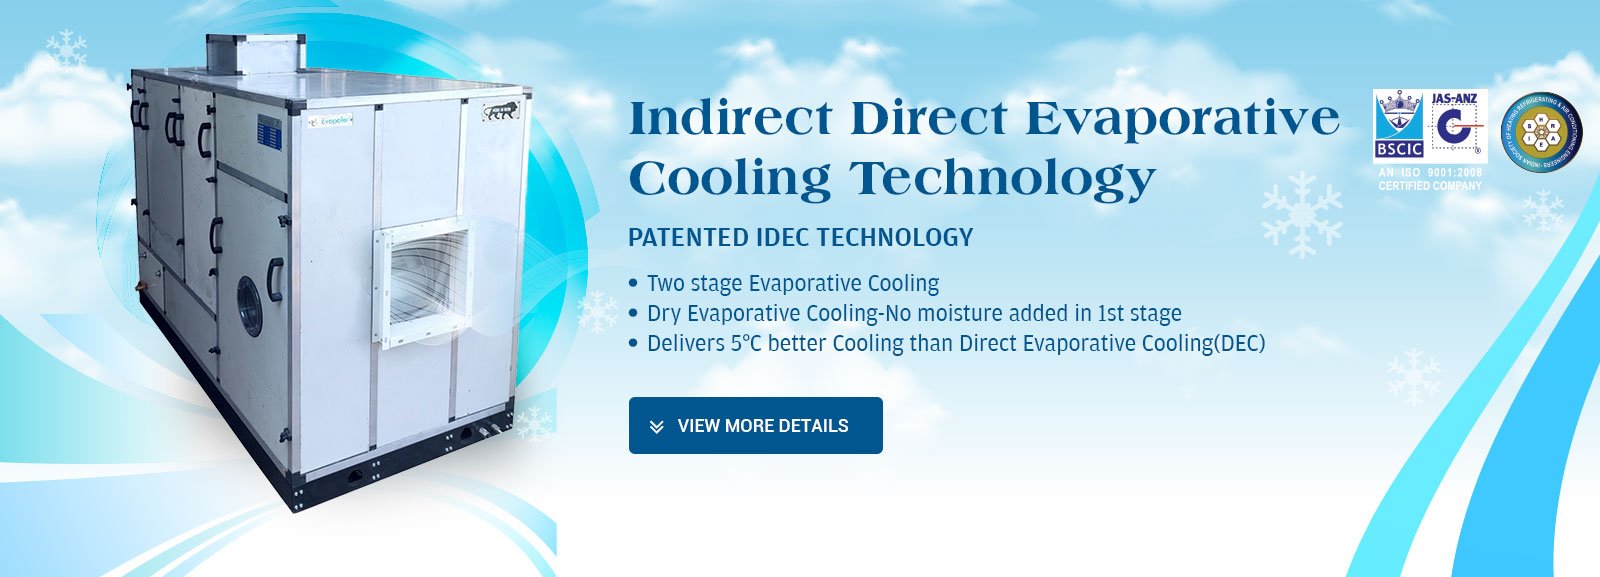 Indirect Direct Evaporative Cooling Technology Evapoler Website Banner